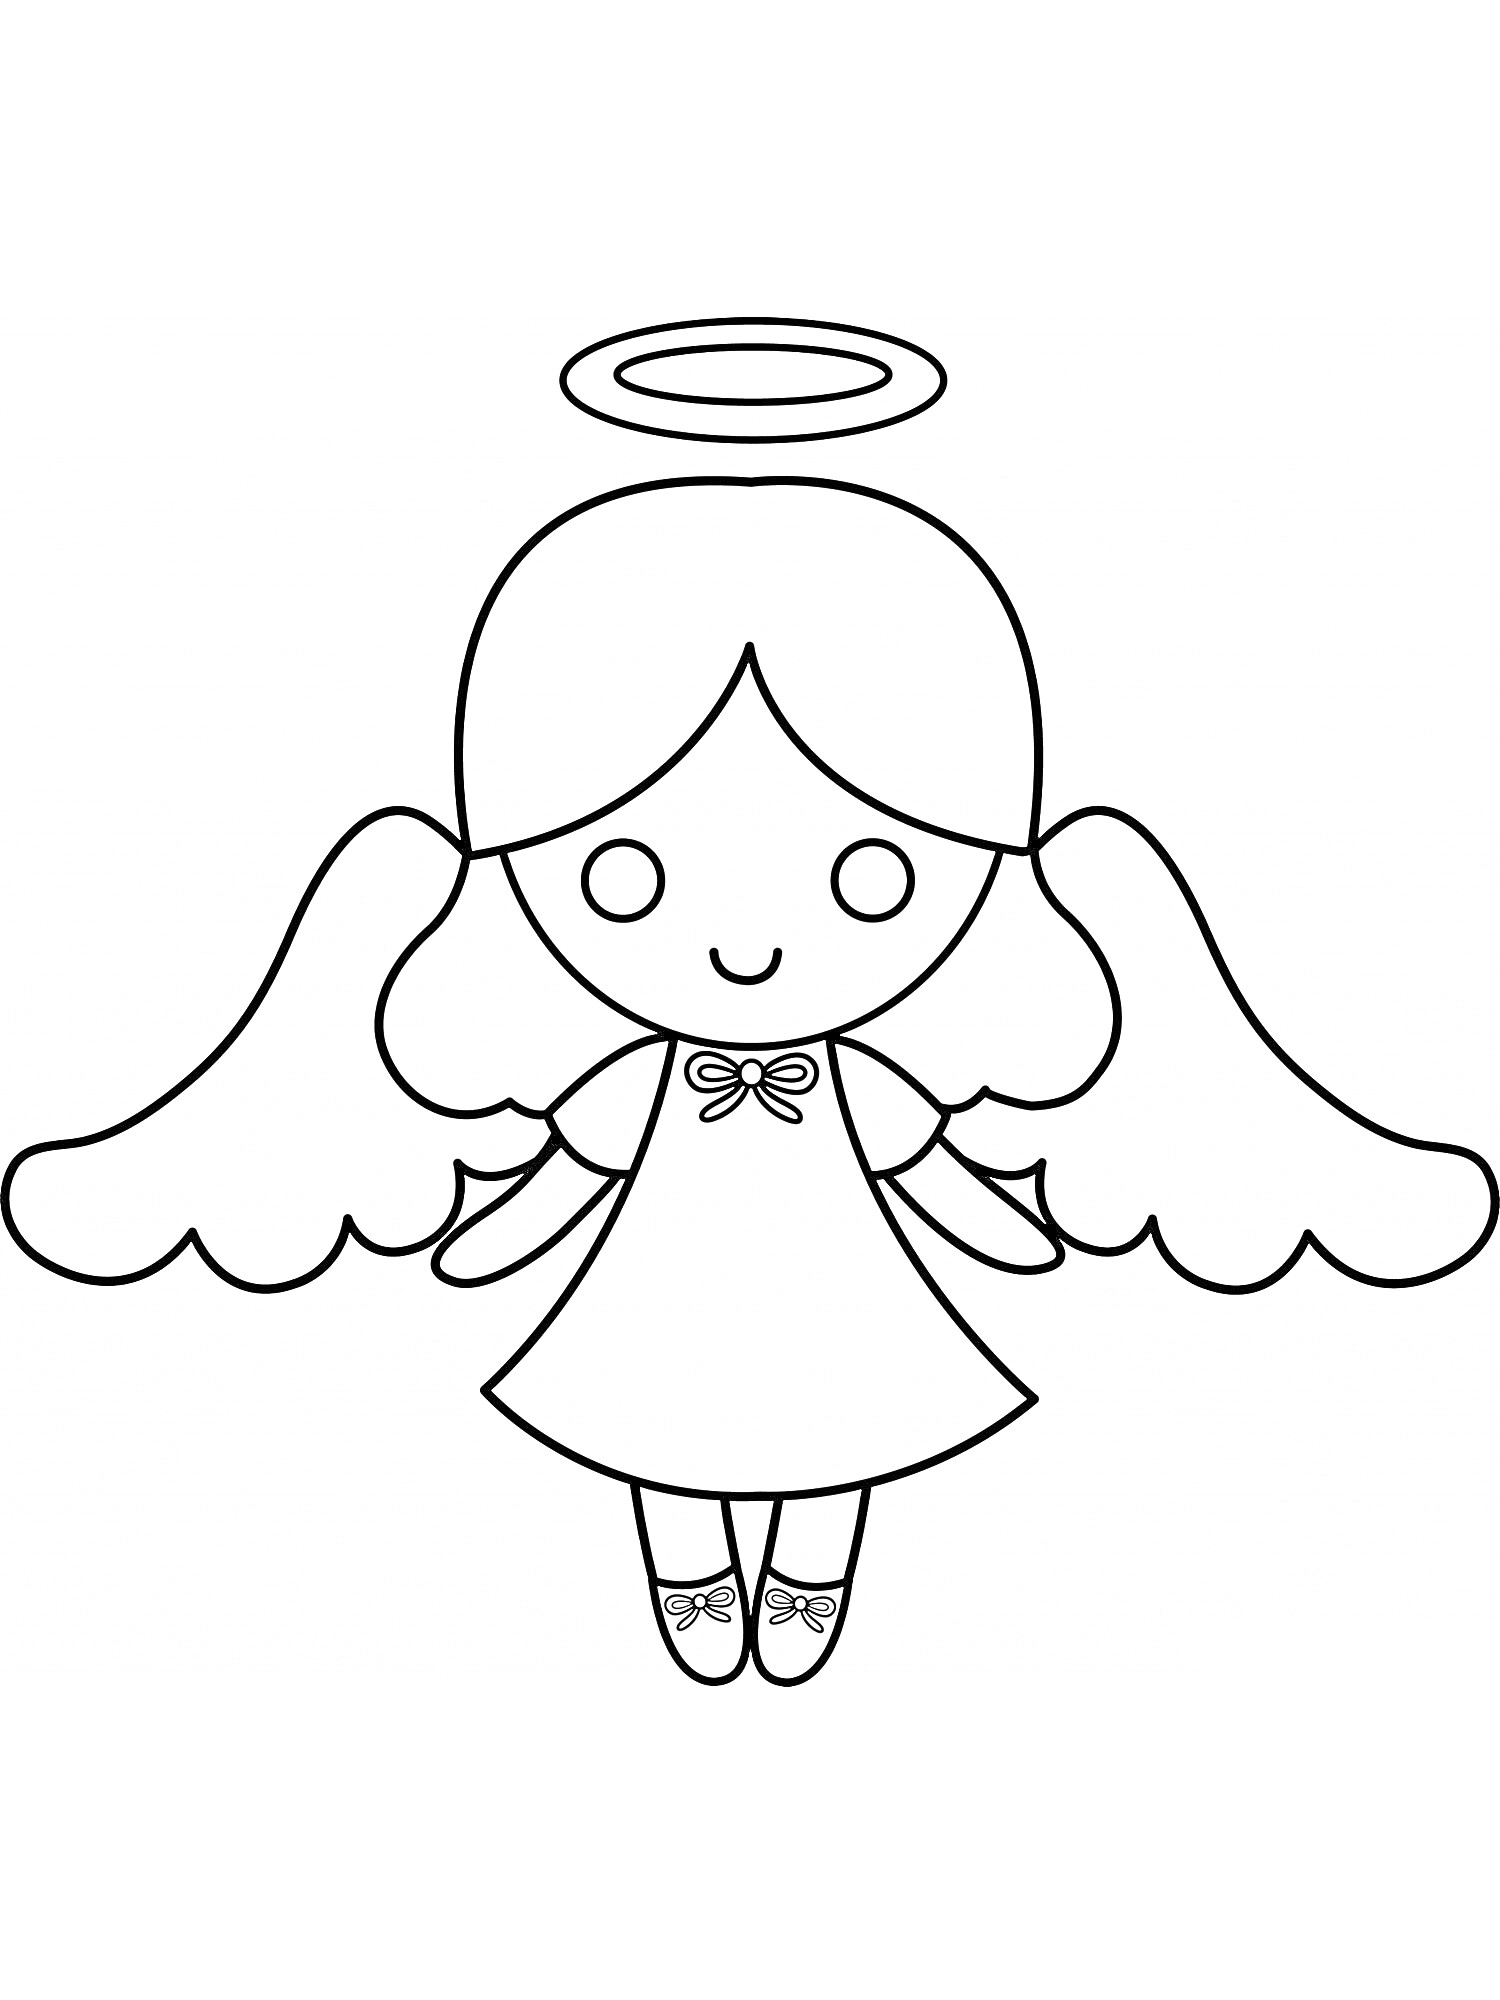 Раскраска Ангел с нимбом, крыльями и платьем, с лентой на шее и туфлями